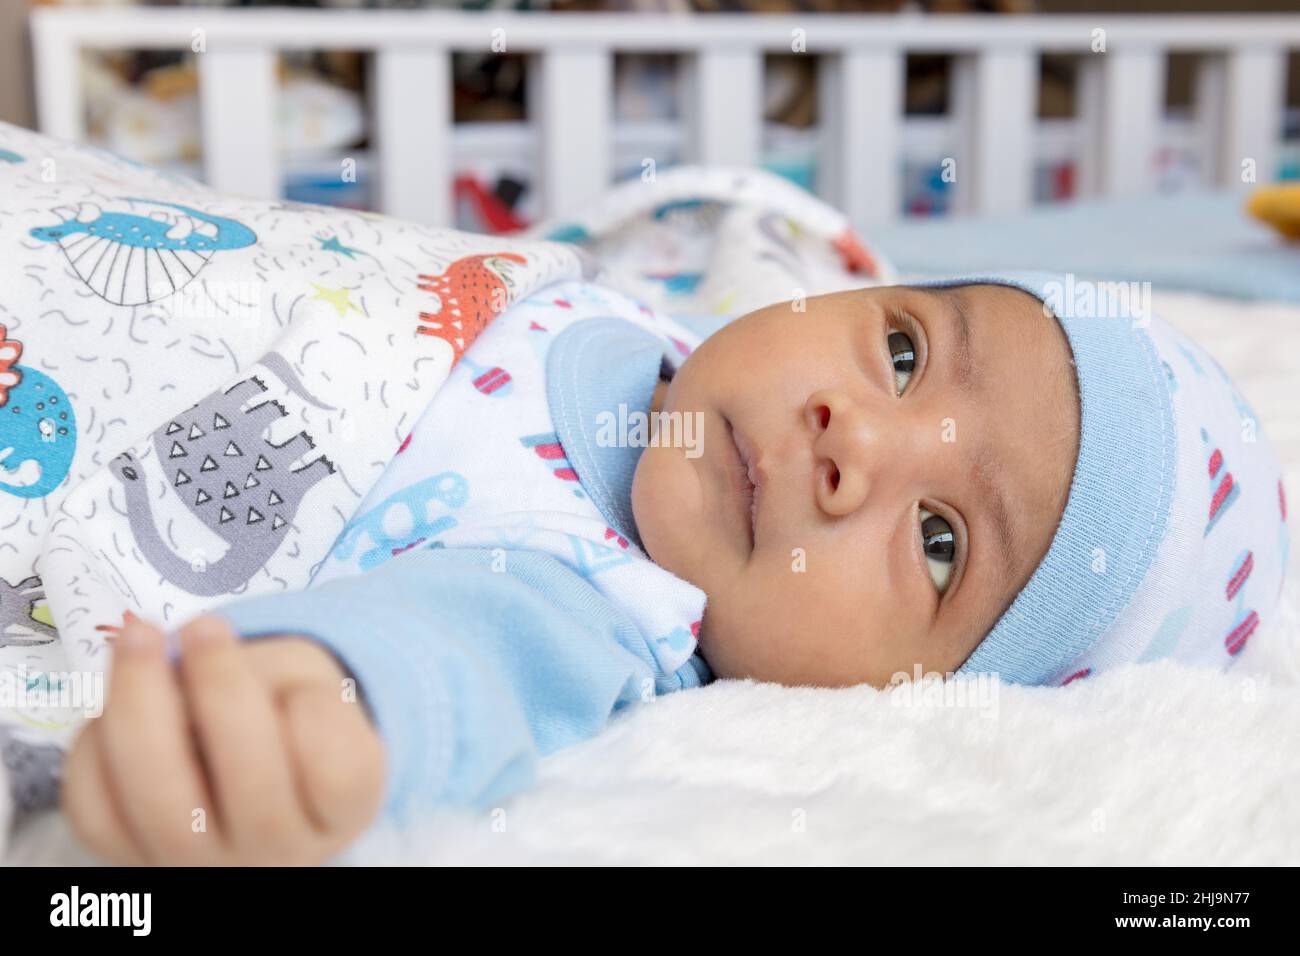 Hübsches Baby, das sich hinlegt und herumschaut, einen Hut und Bettwäsche trägt, einen neugeborenen Lebensstil, ein neues Leben und ein Familienmitglied zu Hause Stockfoto